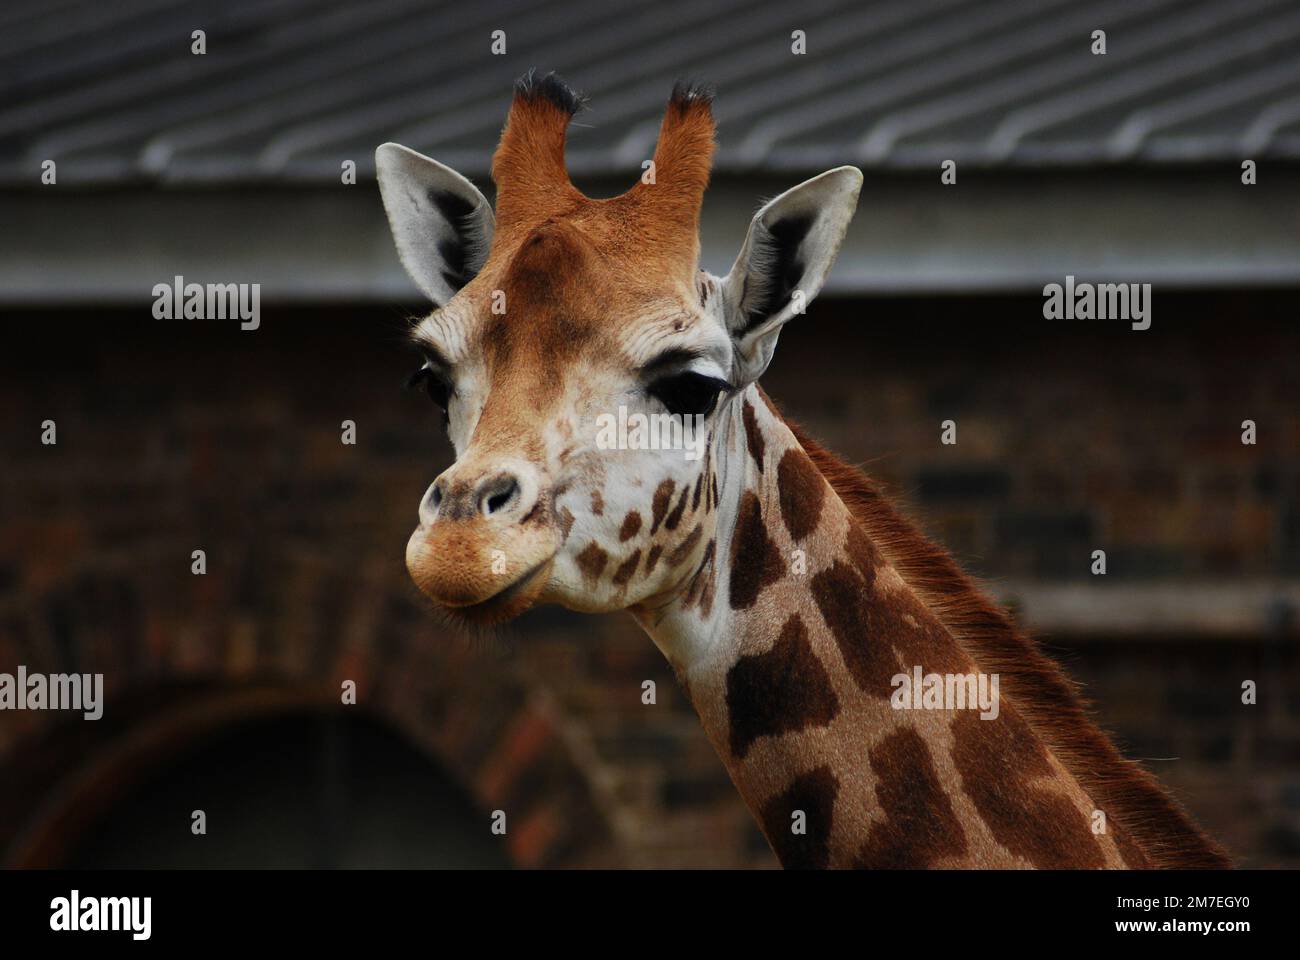 Gros plan de la tête et du cou d'une jeune girafe de Rothschild, également connue sous le nom de girafe Baringo ou ougandaise, l'une des sous-espèces de girafes les plus menacées Banque D'Images